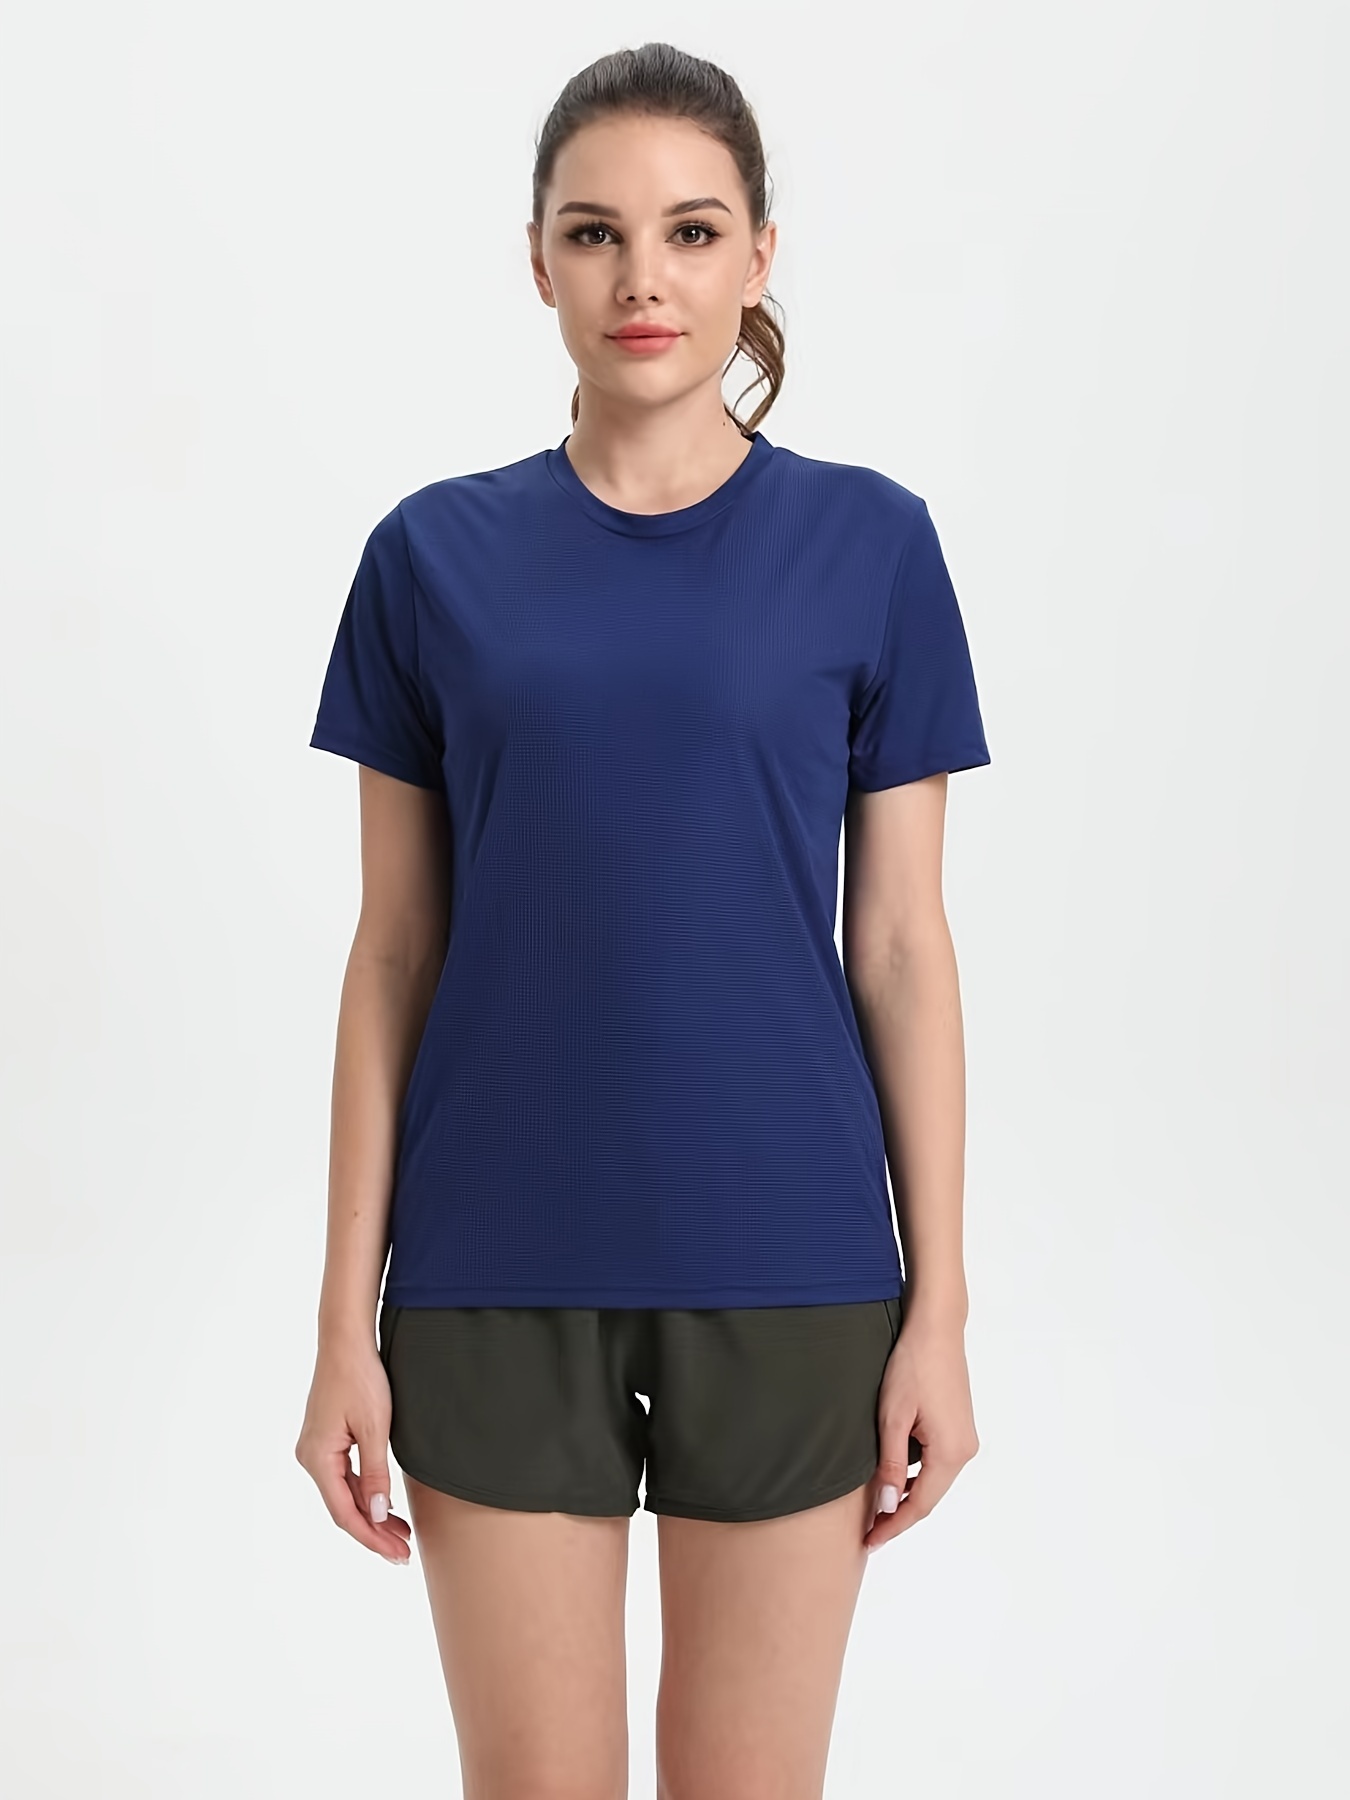 Spiro Camiseta deportiva de manga larga de secado rápido para mujer